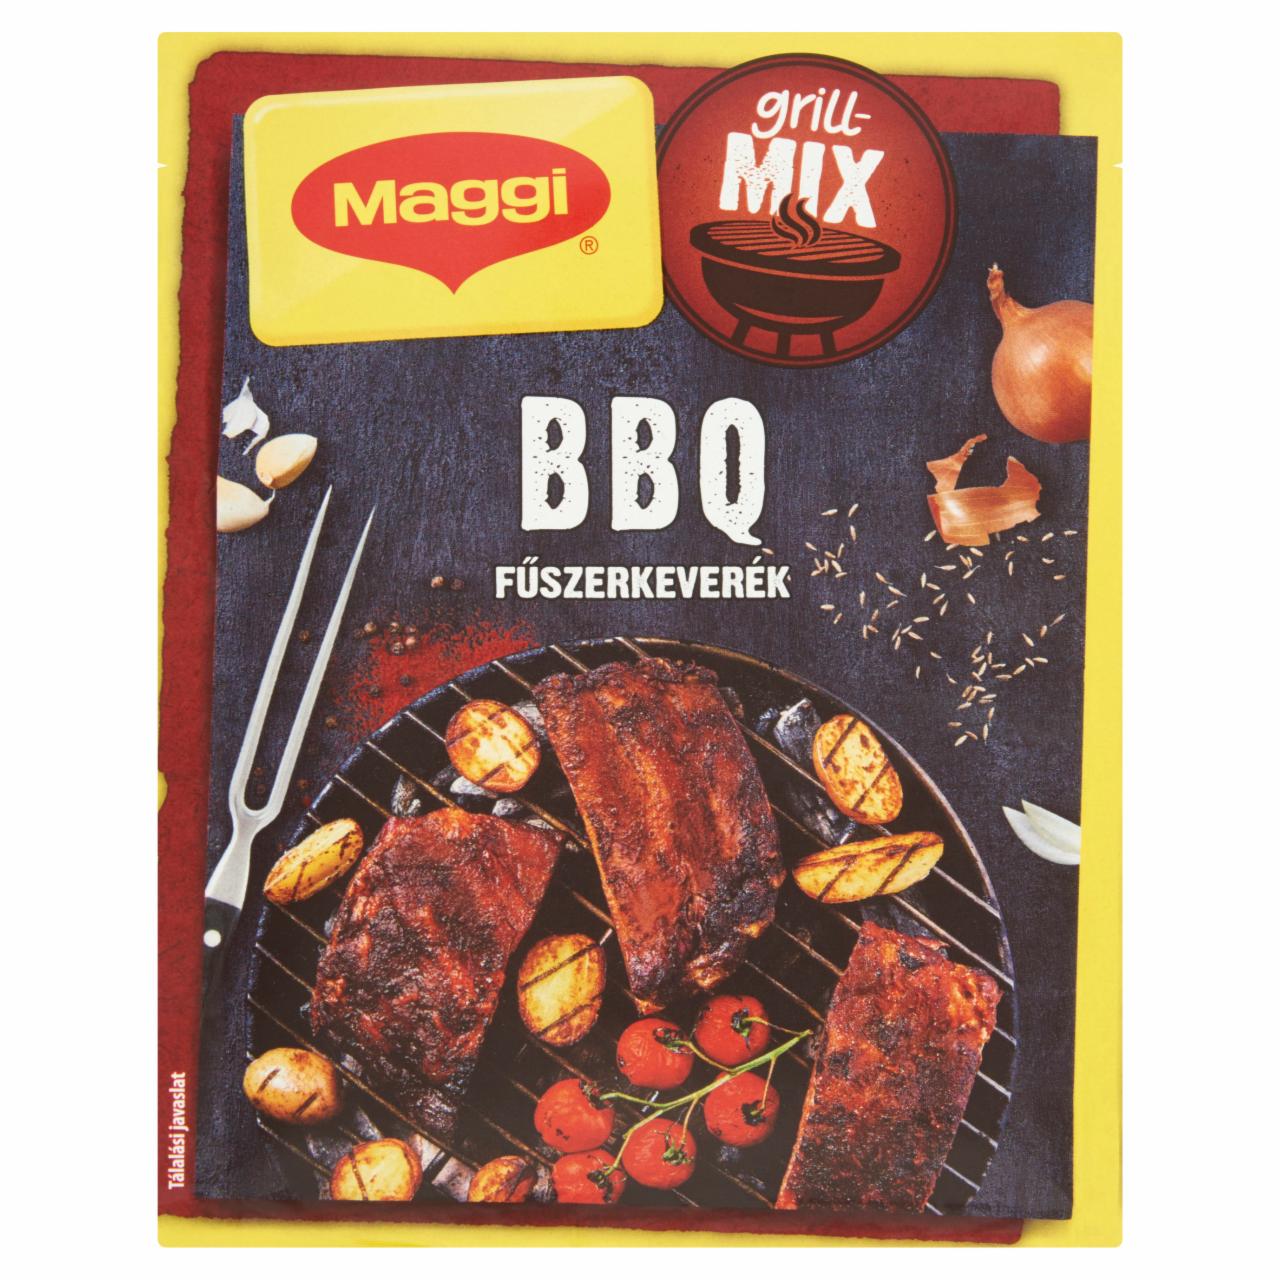 Képek - Maggi Grillmix BBQ fűszerkeverék 30 g